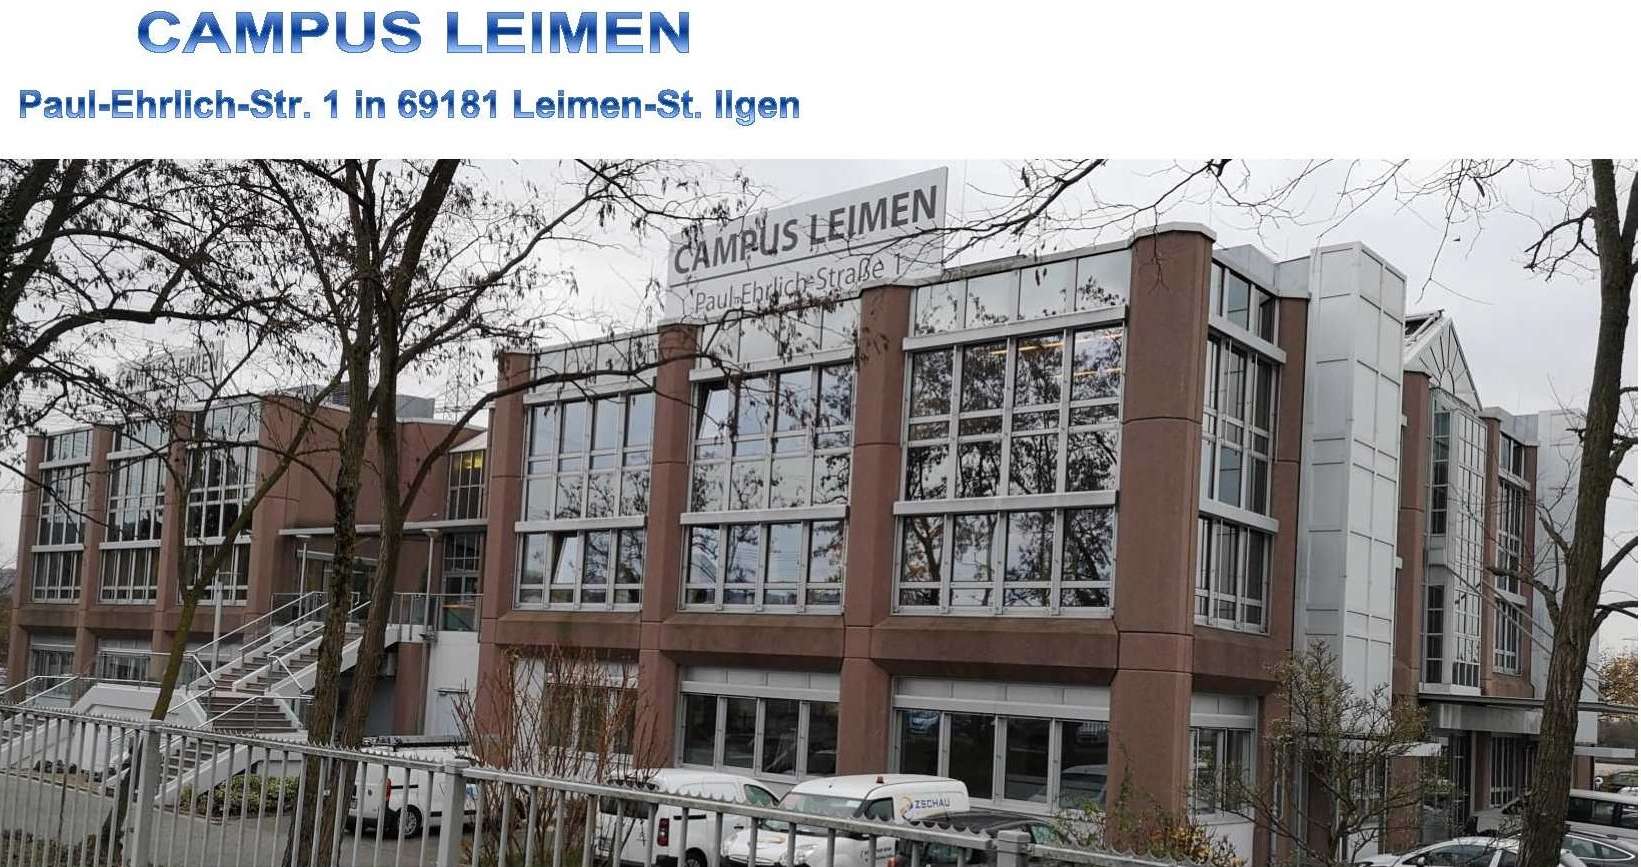  Campus Leimen 